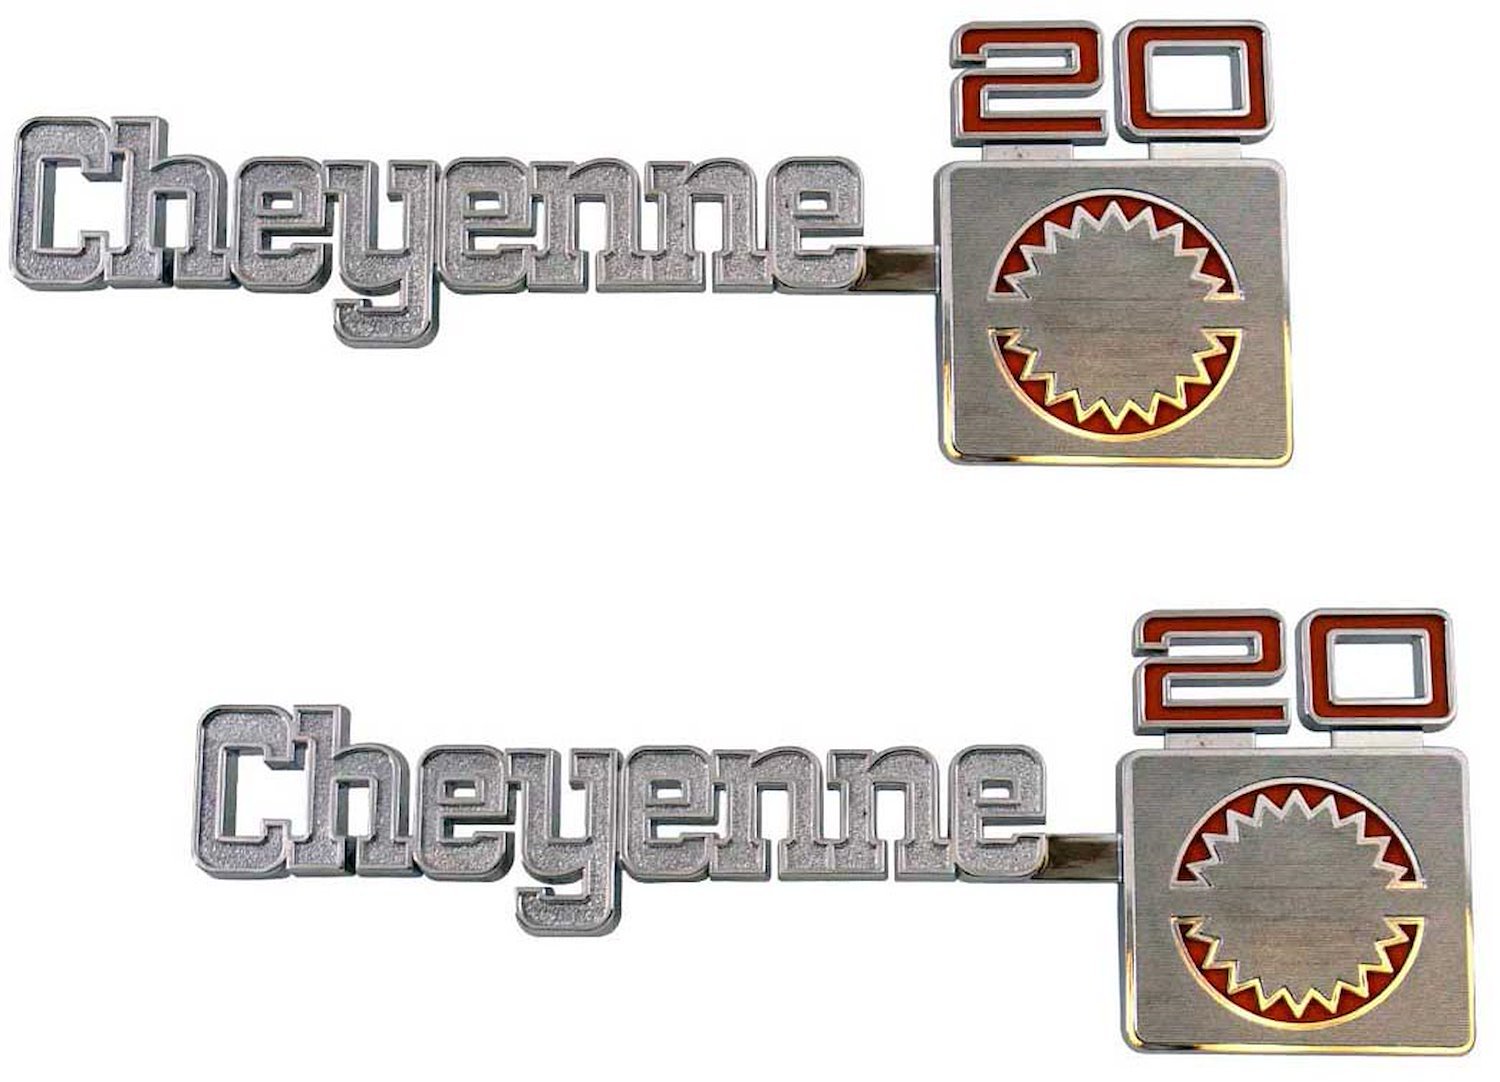 Front Fender Emblem Set 1975-1980 Chevy Cheyenne 3/4 Ton - "Cheyenne 20"